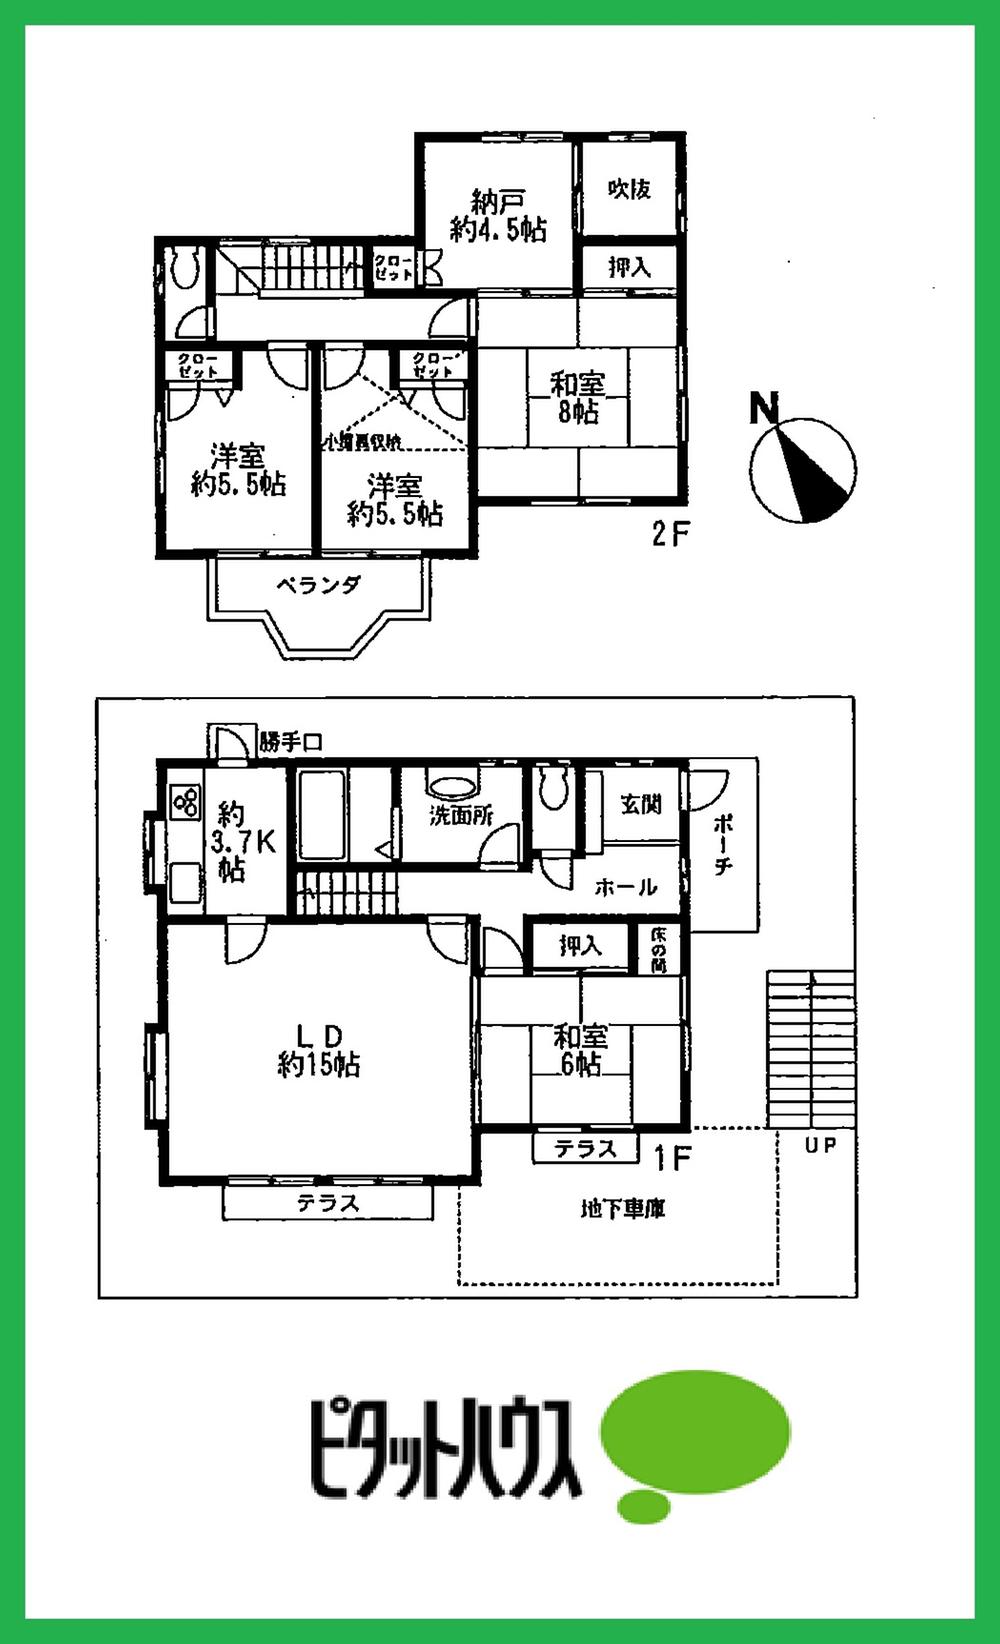 Floor plan. 18,800,000 yen, 4LDK + S (storeroom), Land area 139.05 sq m , Building area 114.01 sq m